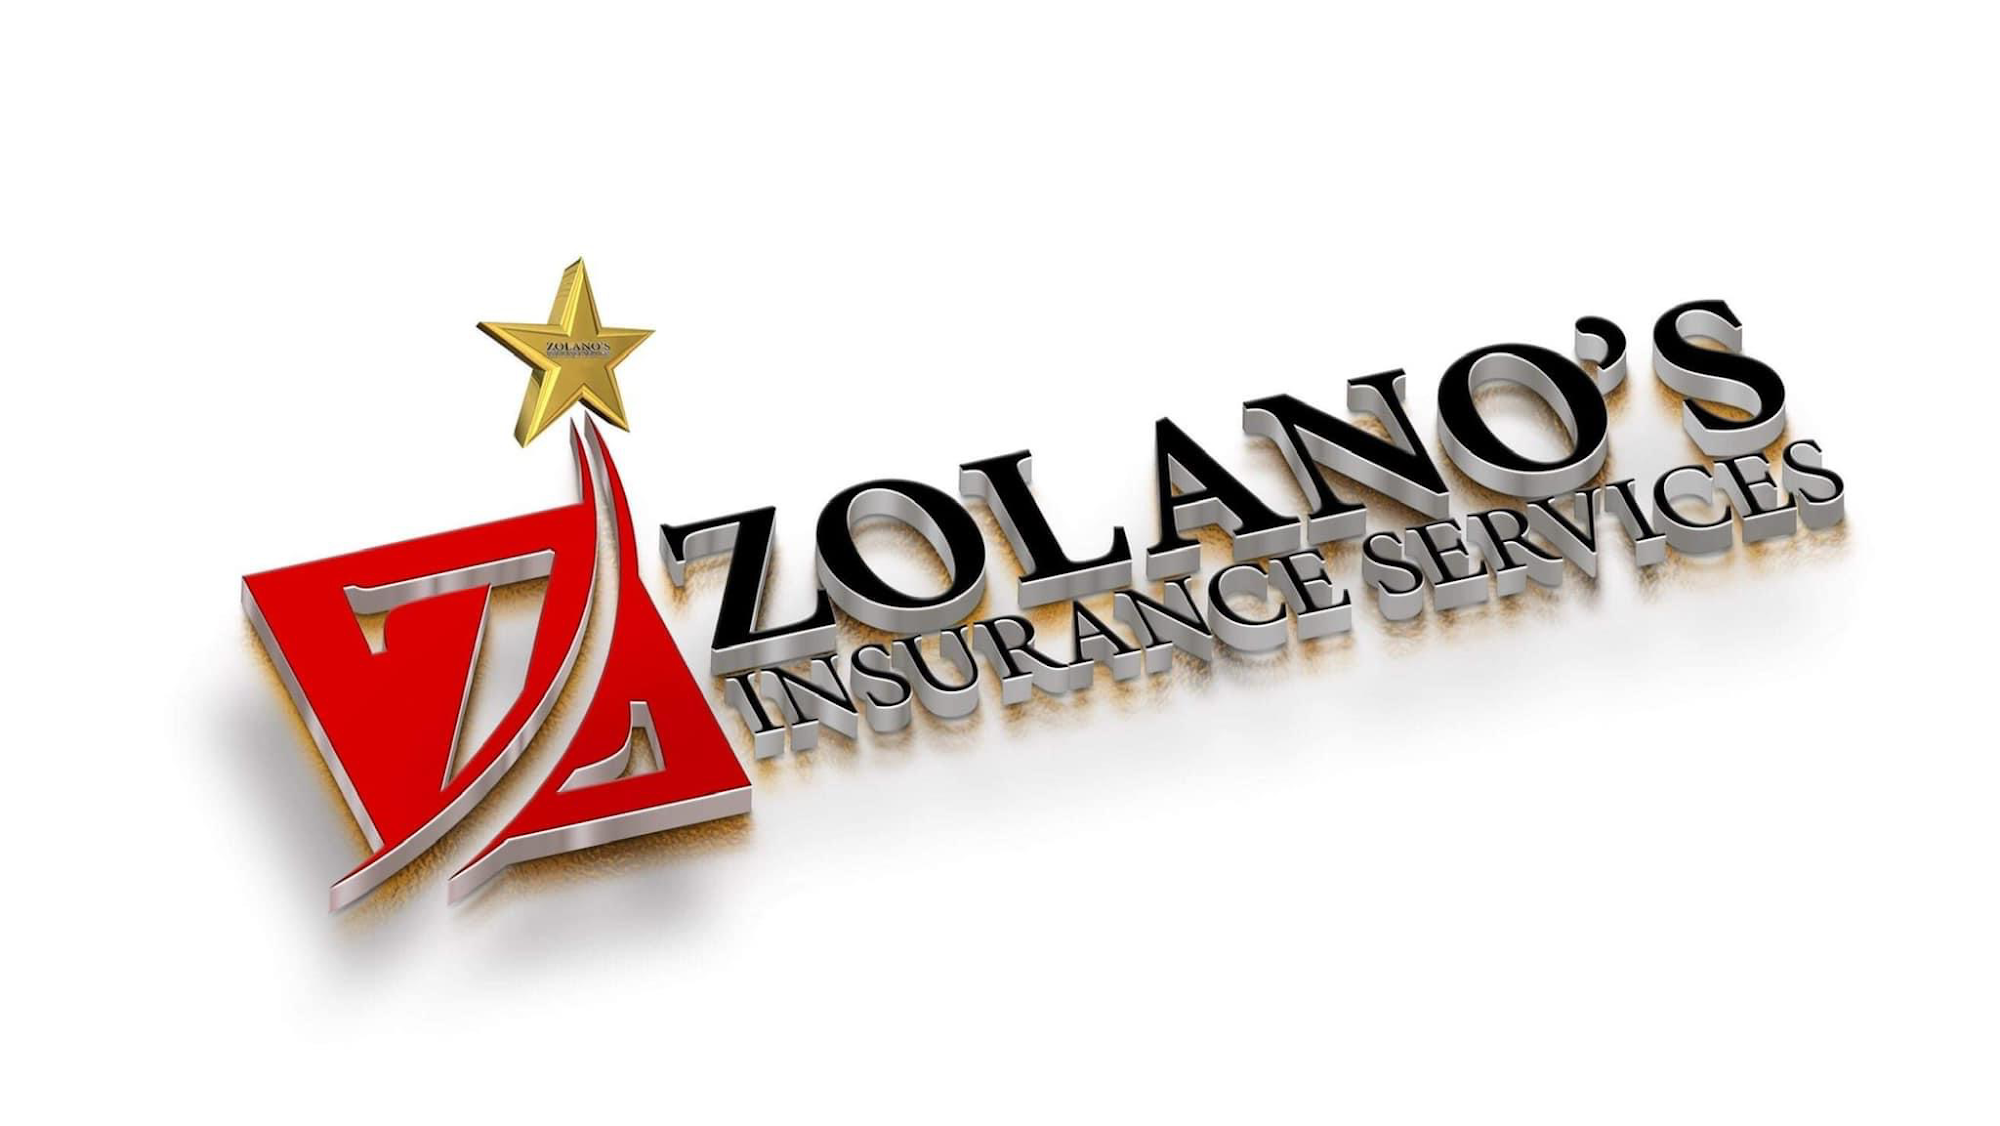 Zolano’s Insurance Services